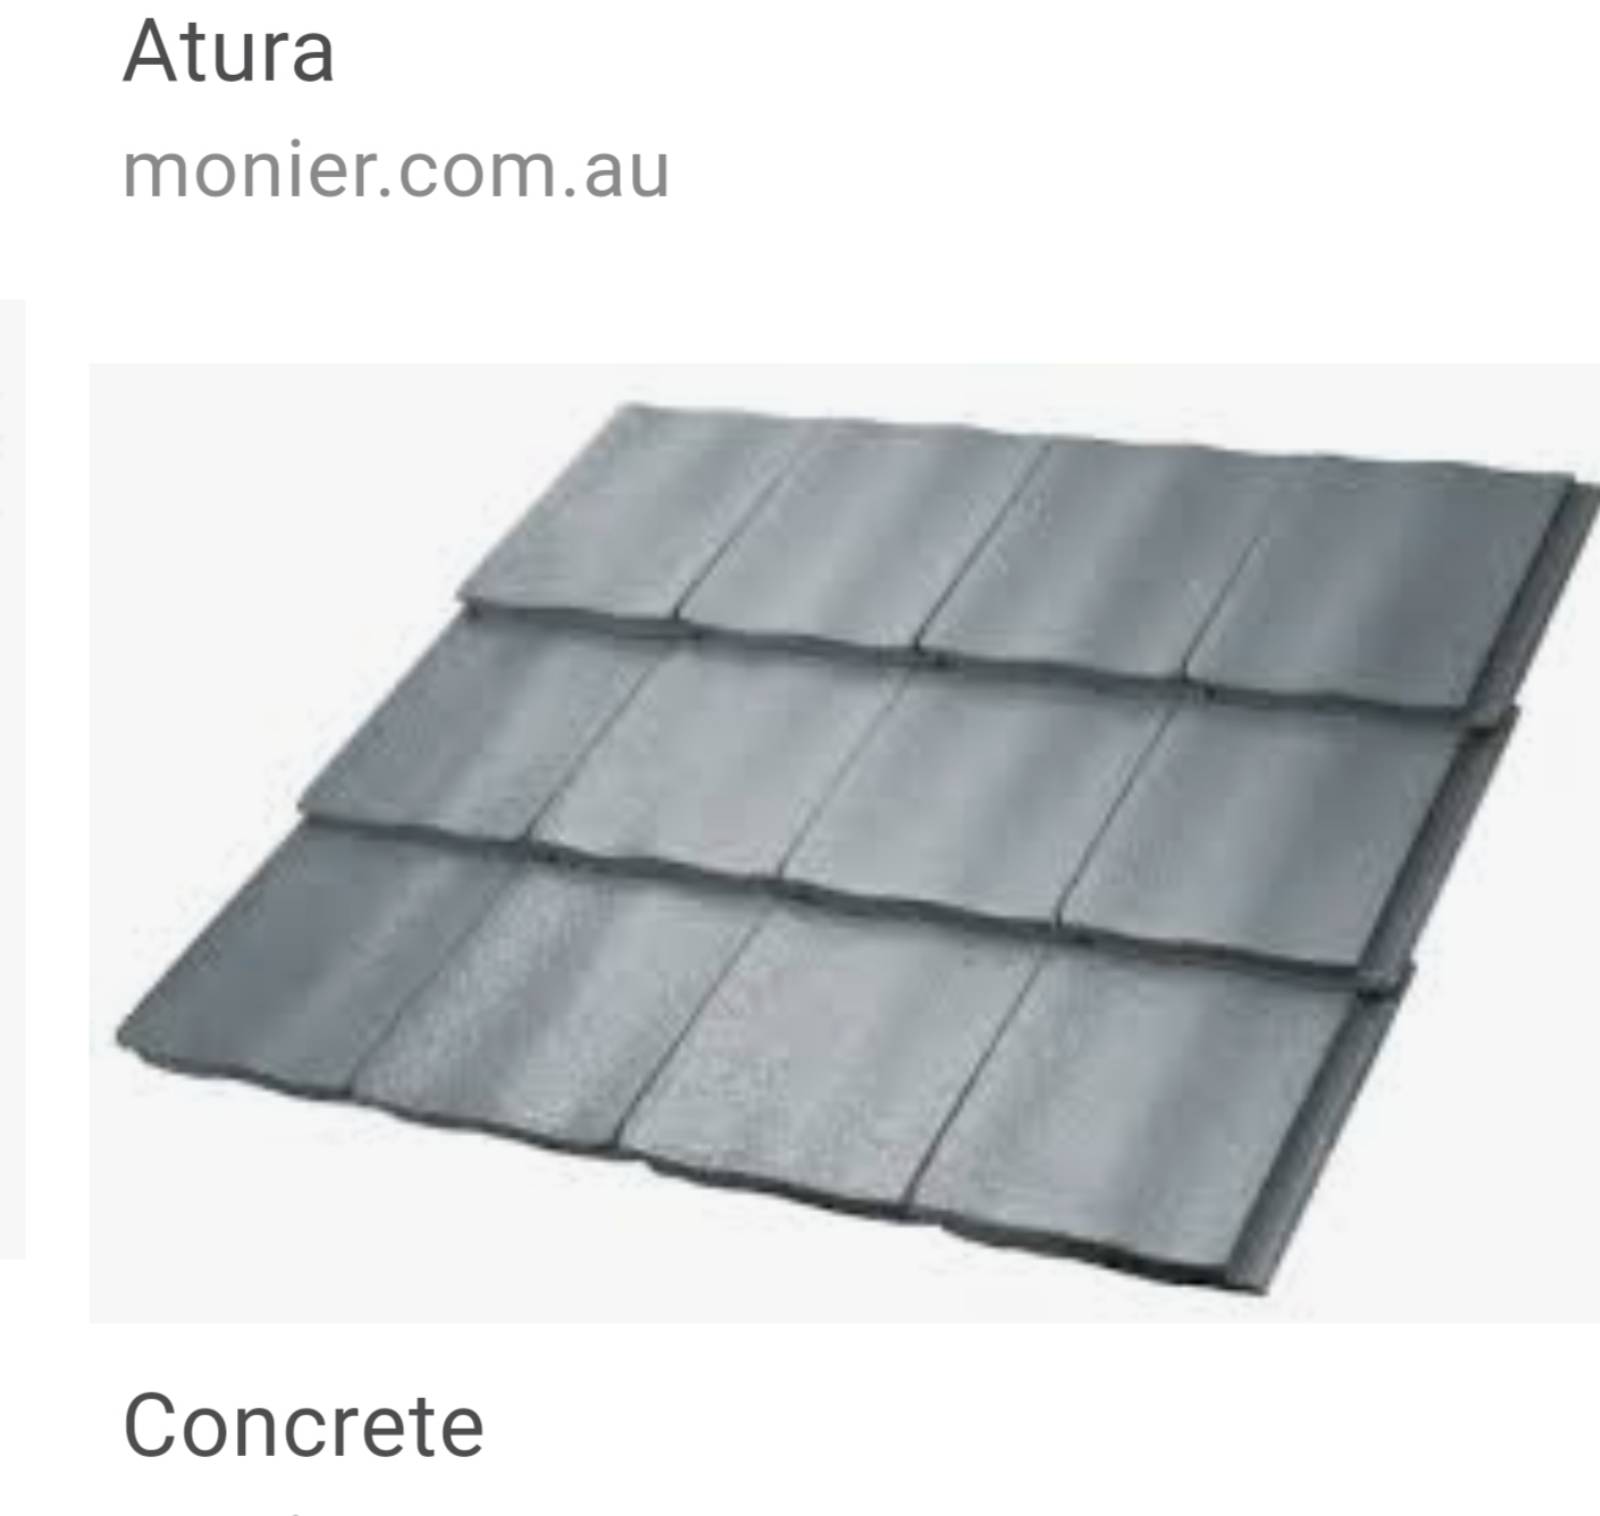 Concrete tile roof question